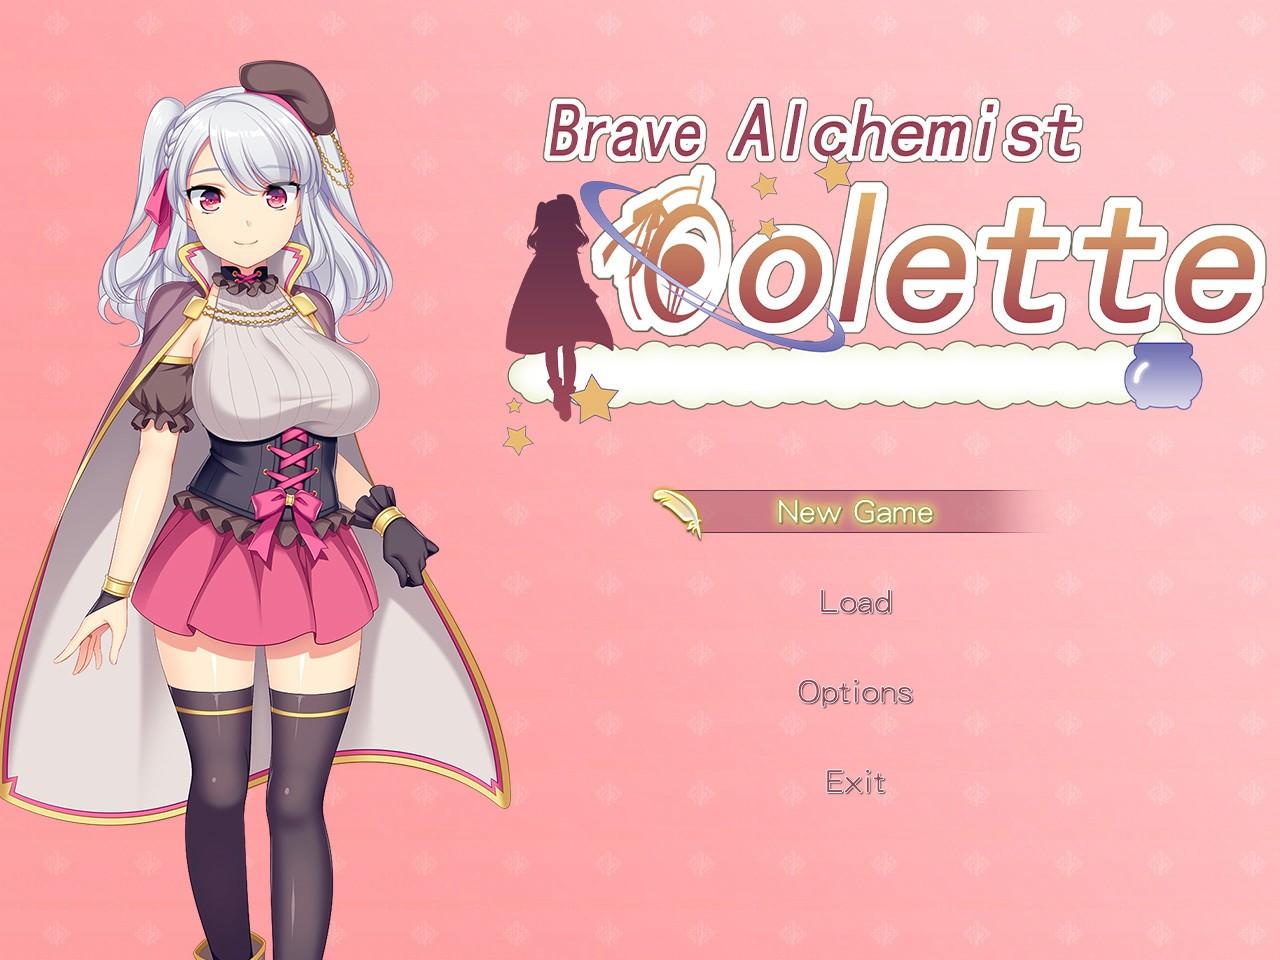 Brave Alchemist Colette Steam Altergift, 30.17 usd